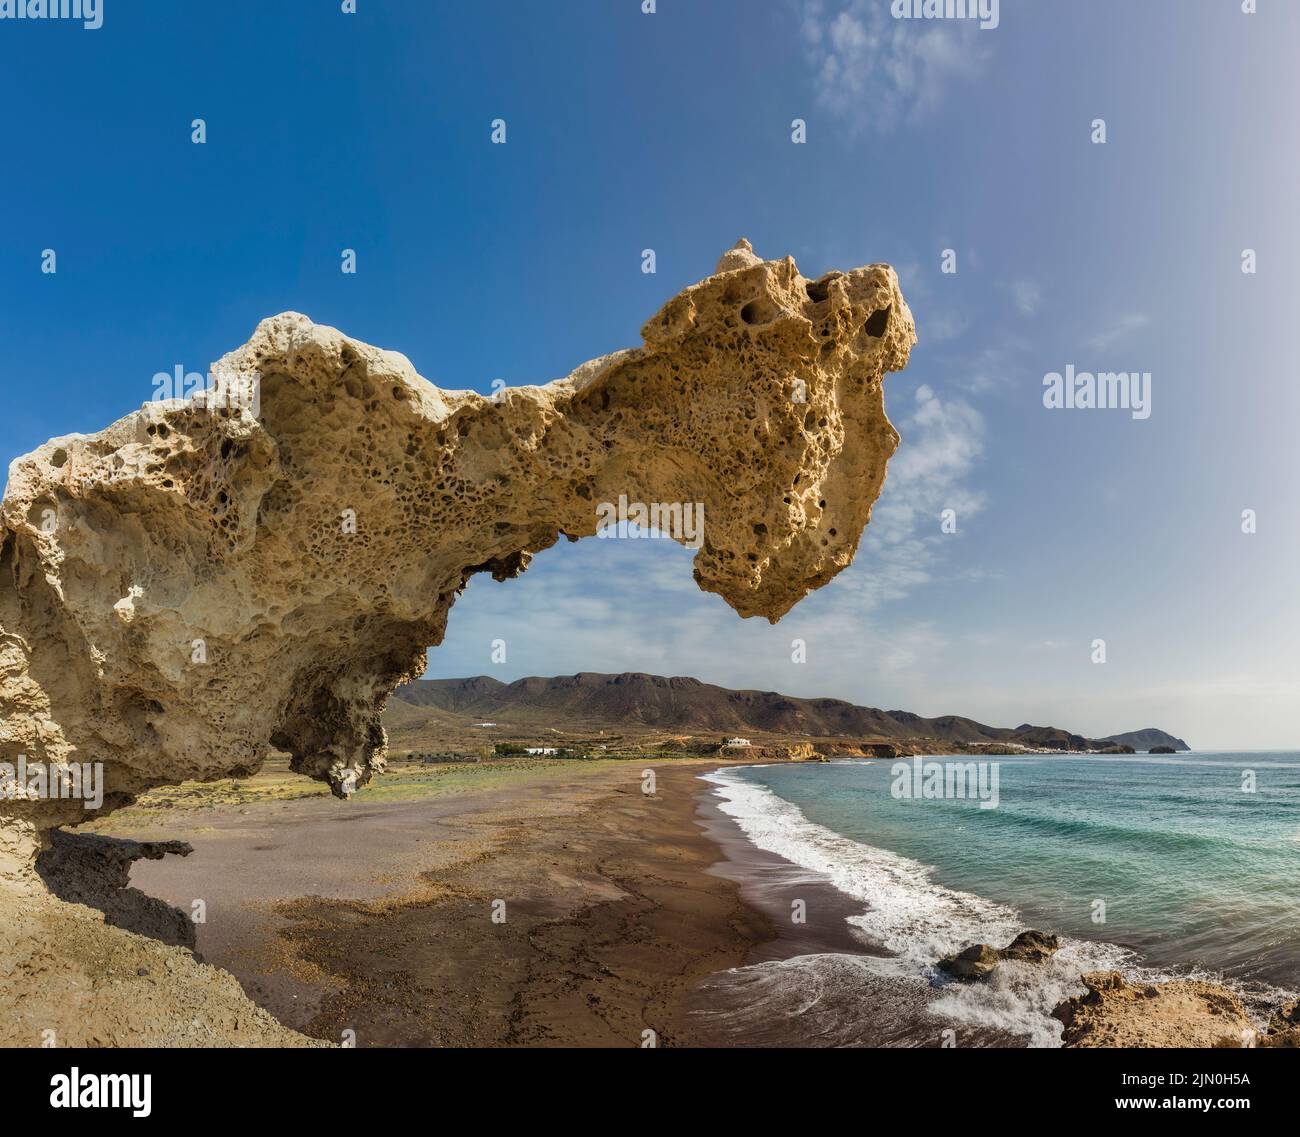 Playa del Arco, Los Escullos, Parco Naturale Cabo de Gata-Nijar, Cabo de Gata, Provincia di Almeria, Andalusia, Spagna meridionale. La spiaggia è conosciuta anche come Foto Stock